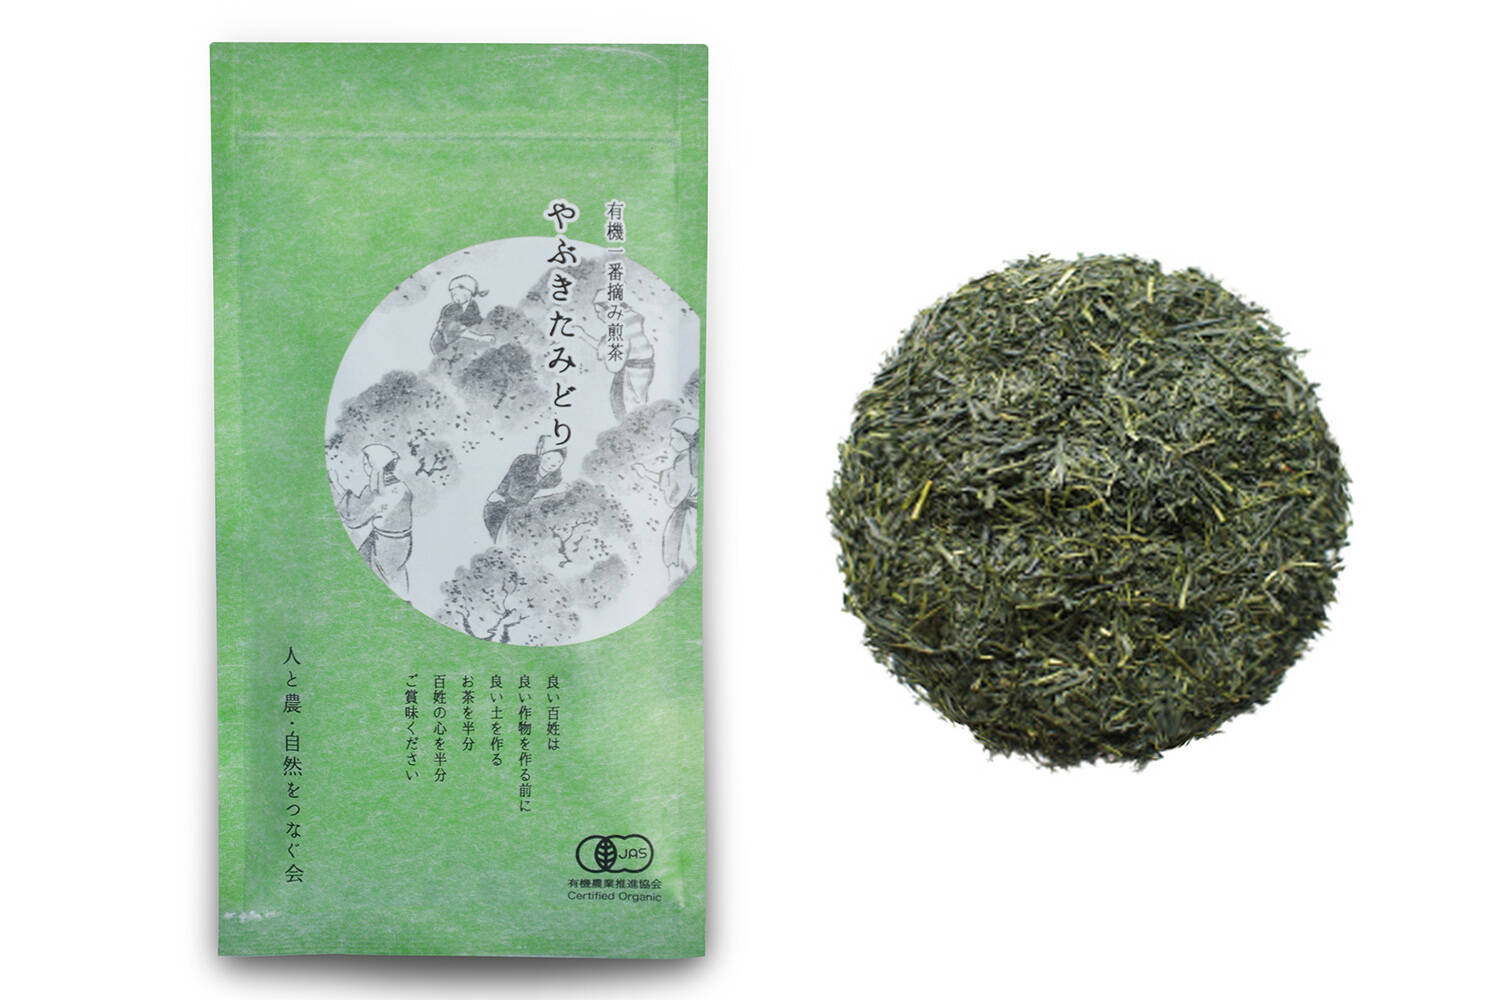 新品未開封煎茶静岡 緑茶 100g - 茶